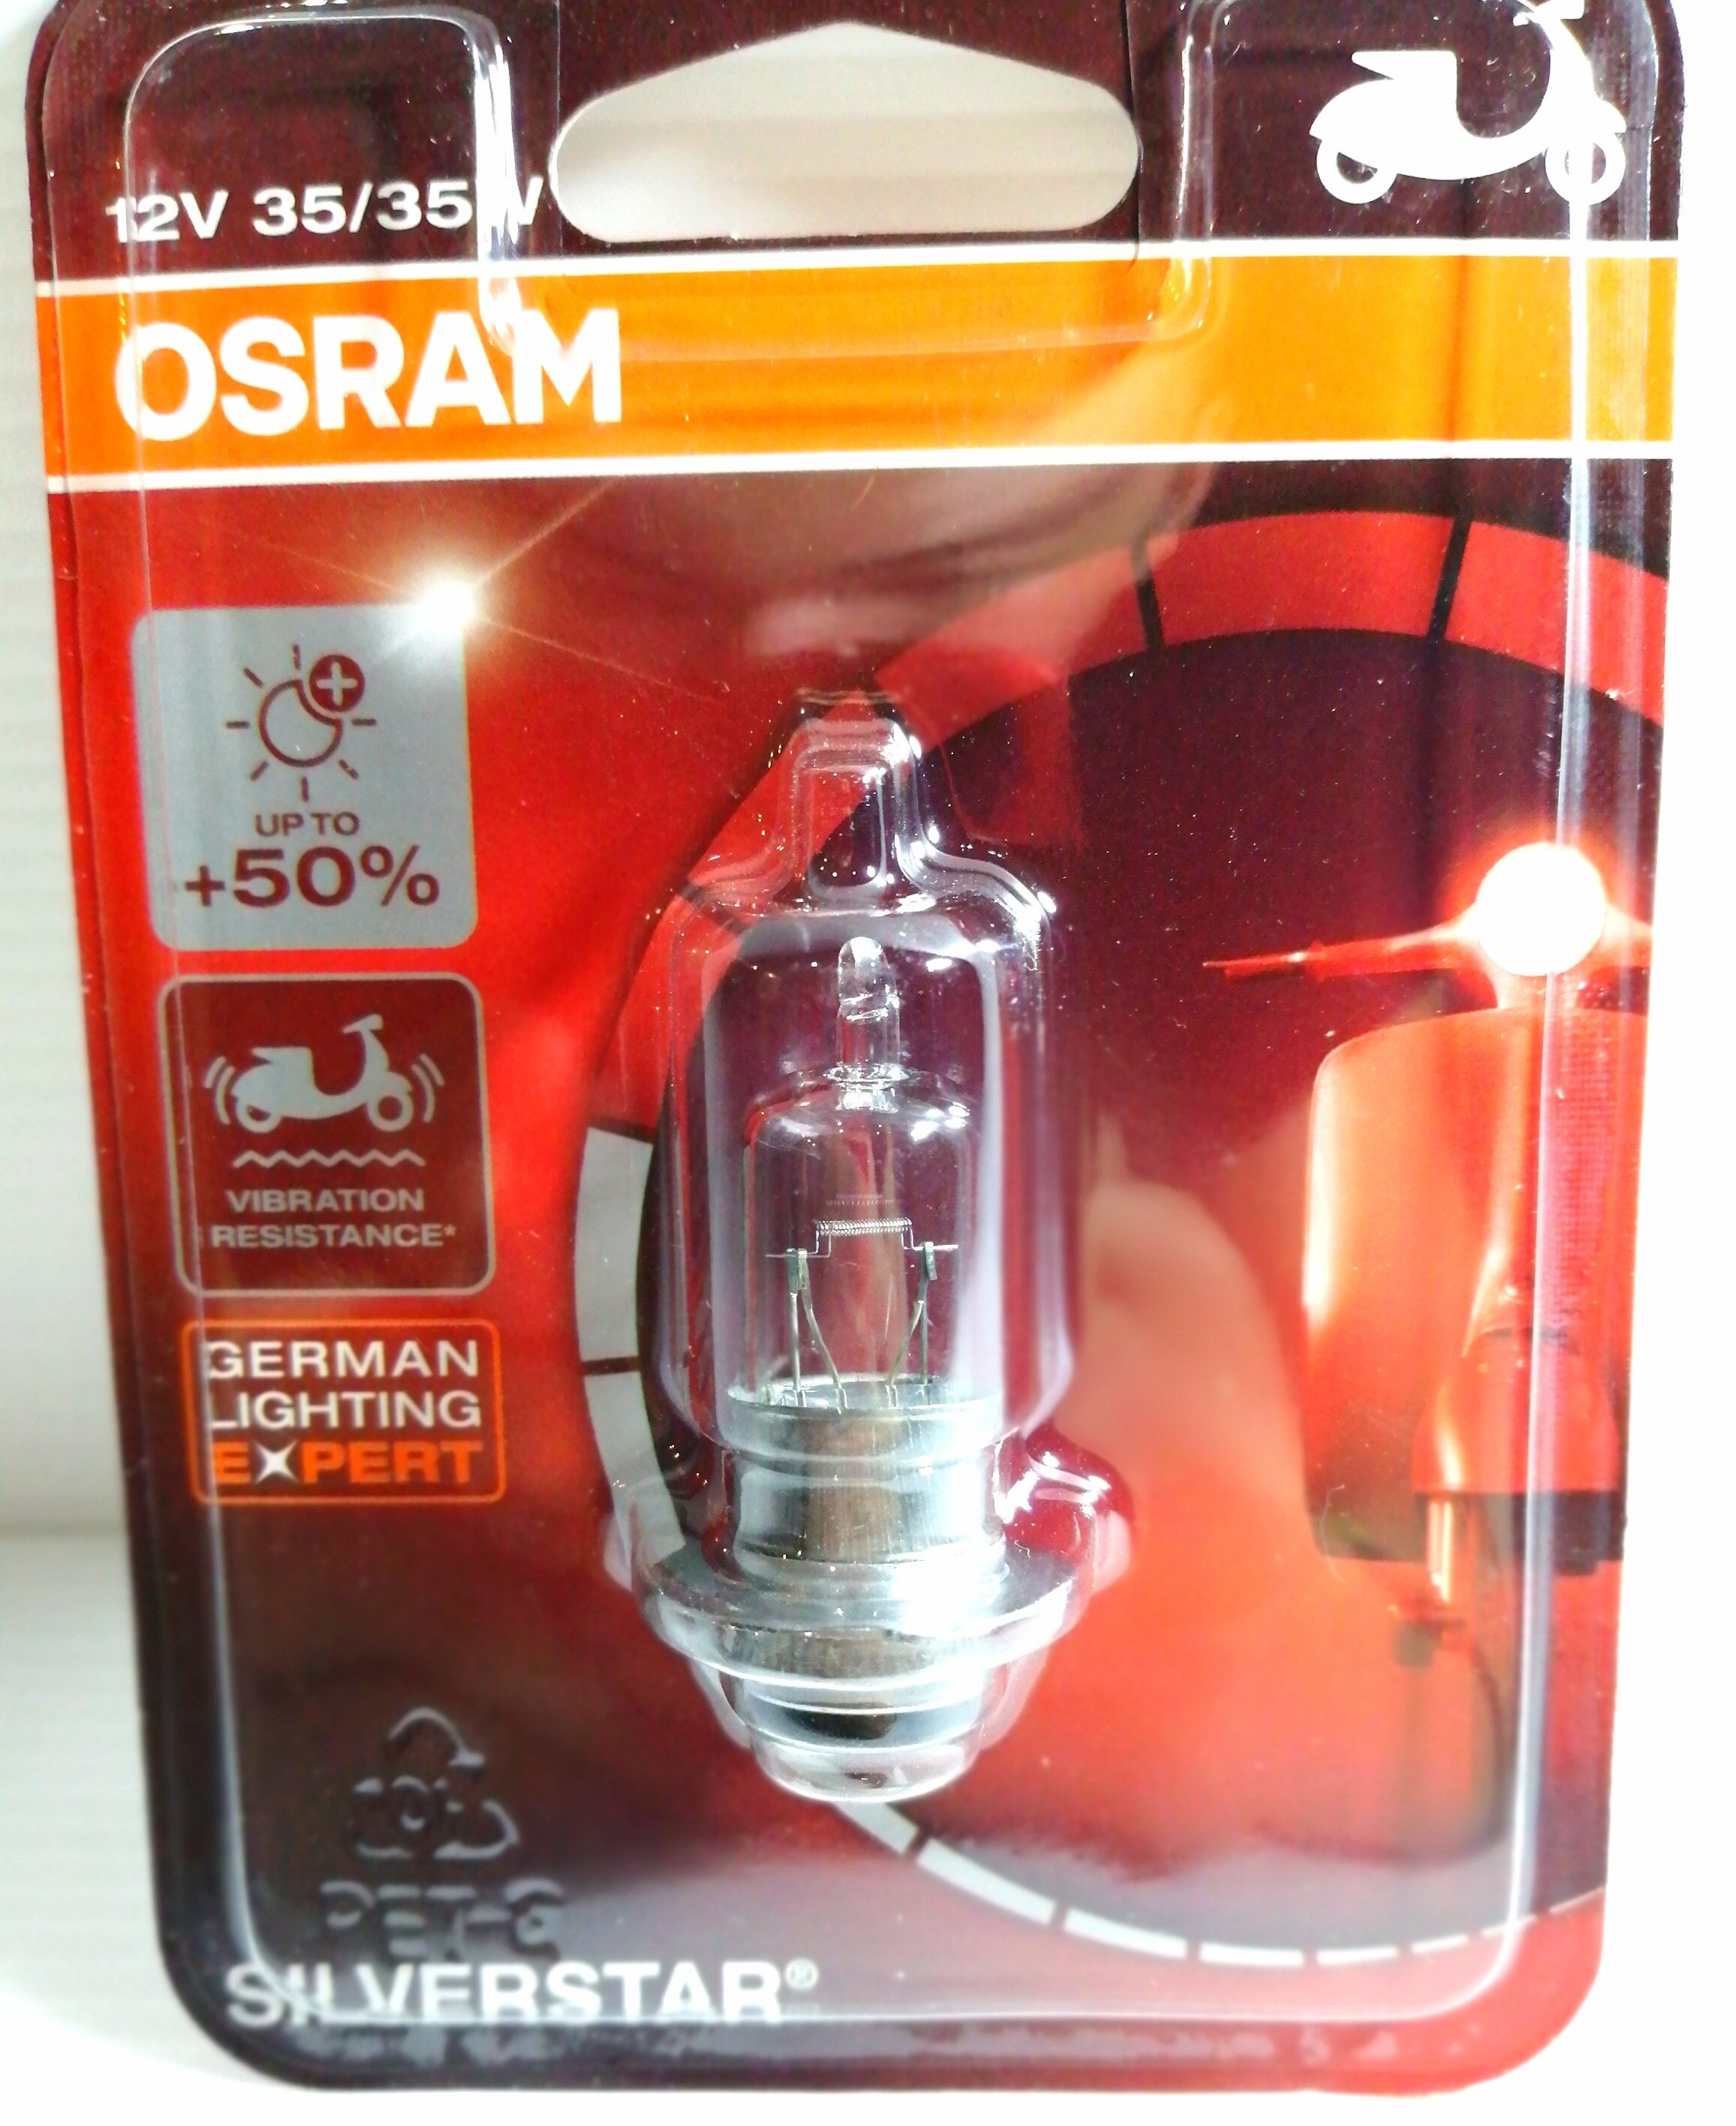 หลอดไฟ Osram แท้ 12v 35/35w 4000k สีขาว (แสงออกสีเดิม)